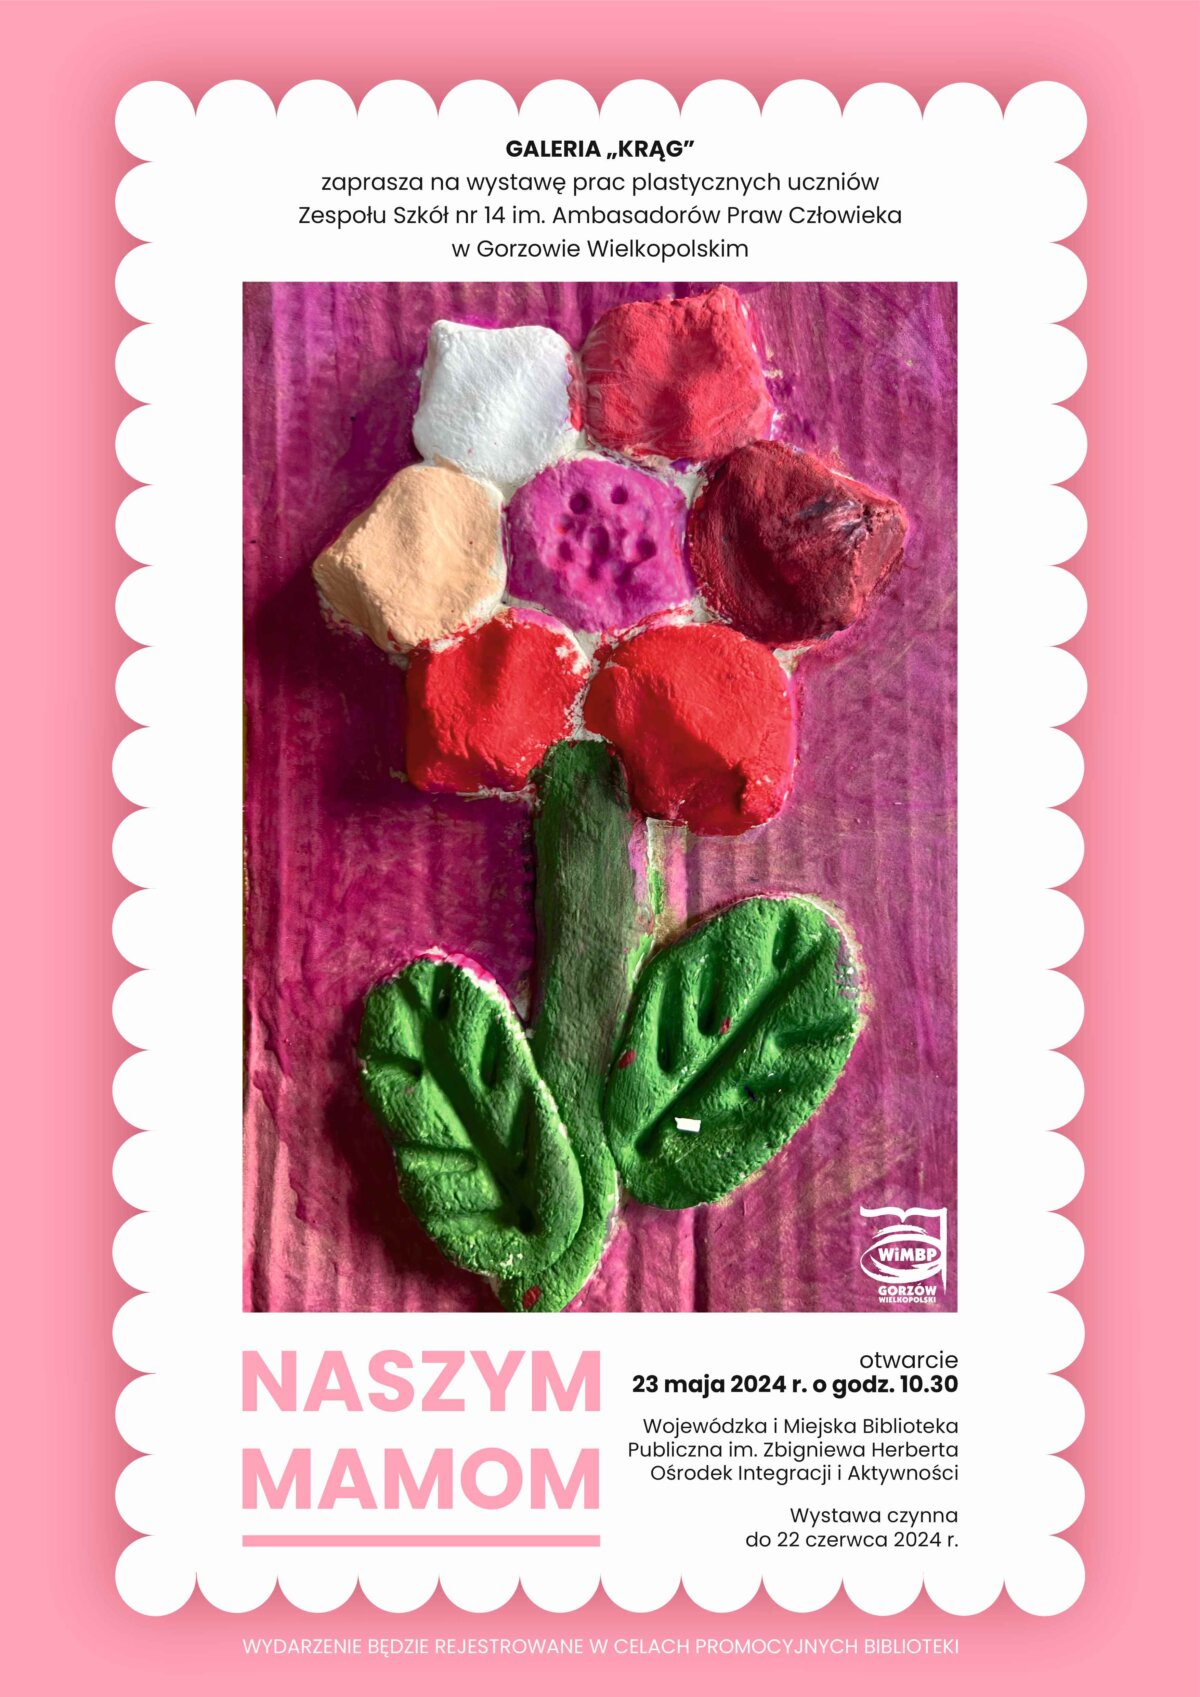 Plakat promujący wydarzenie z pracą plastyczną w formie kwiatu, w tonacji różowo-białej. Kliknięcie w obrazek spowoduje powiększenie.